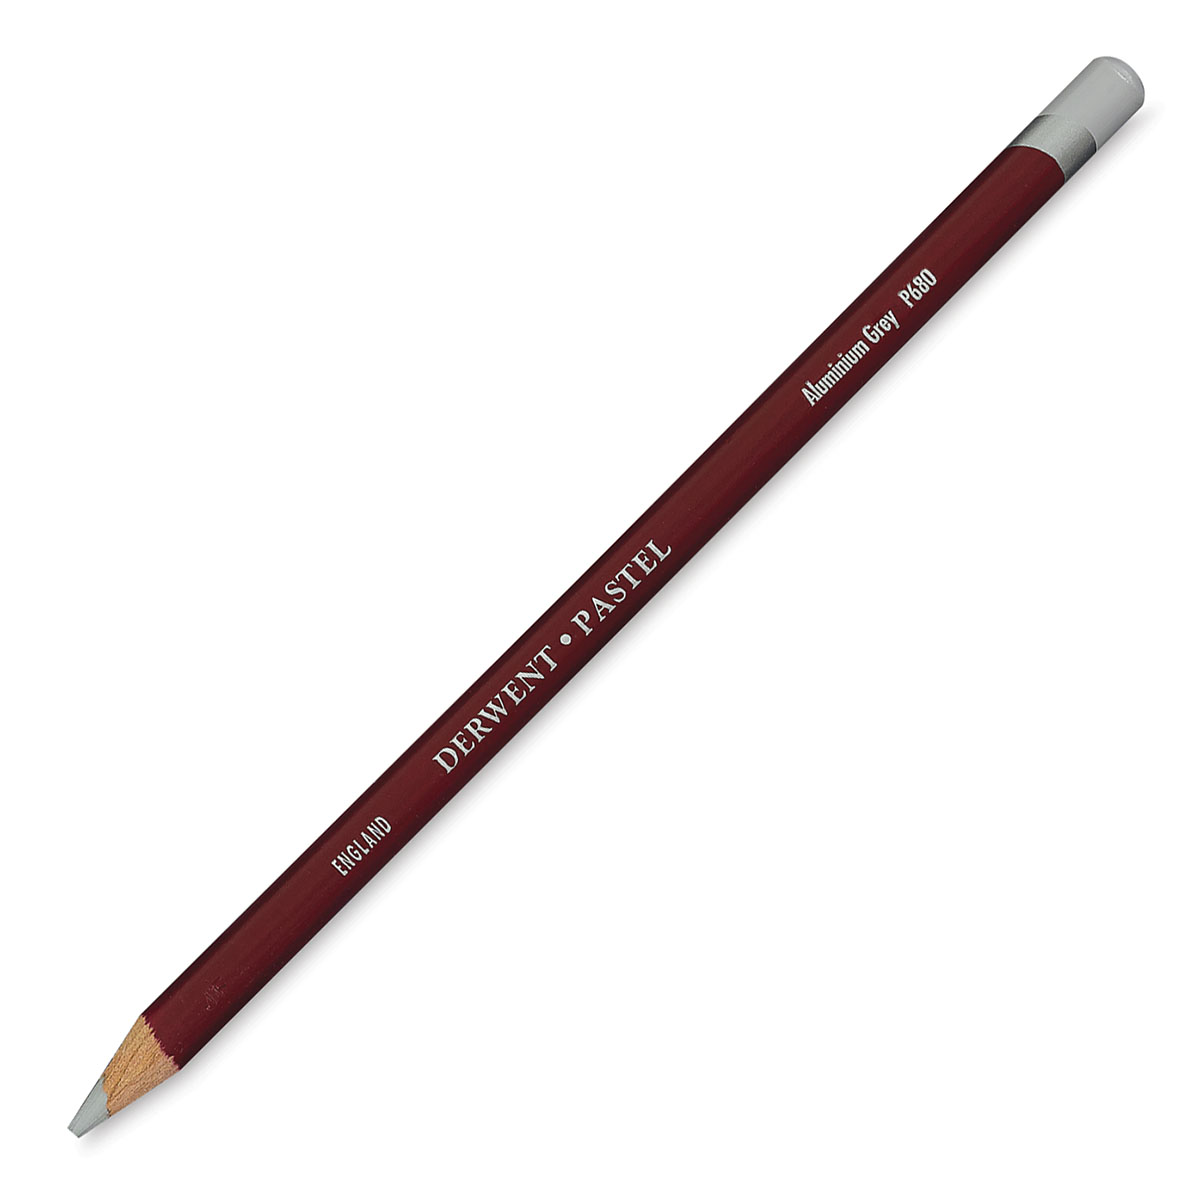 Derwent® Pastel Pencil 6 Color Set